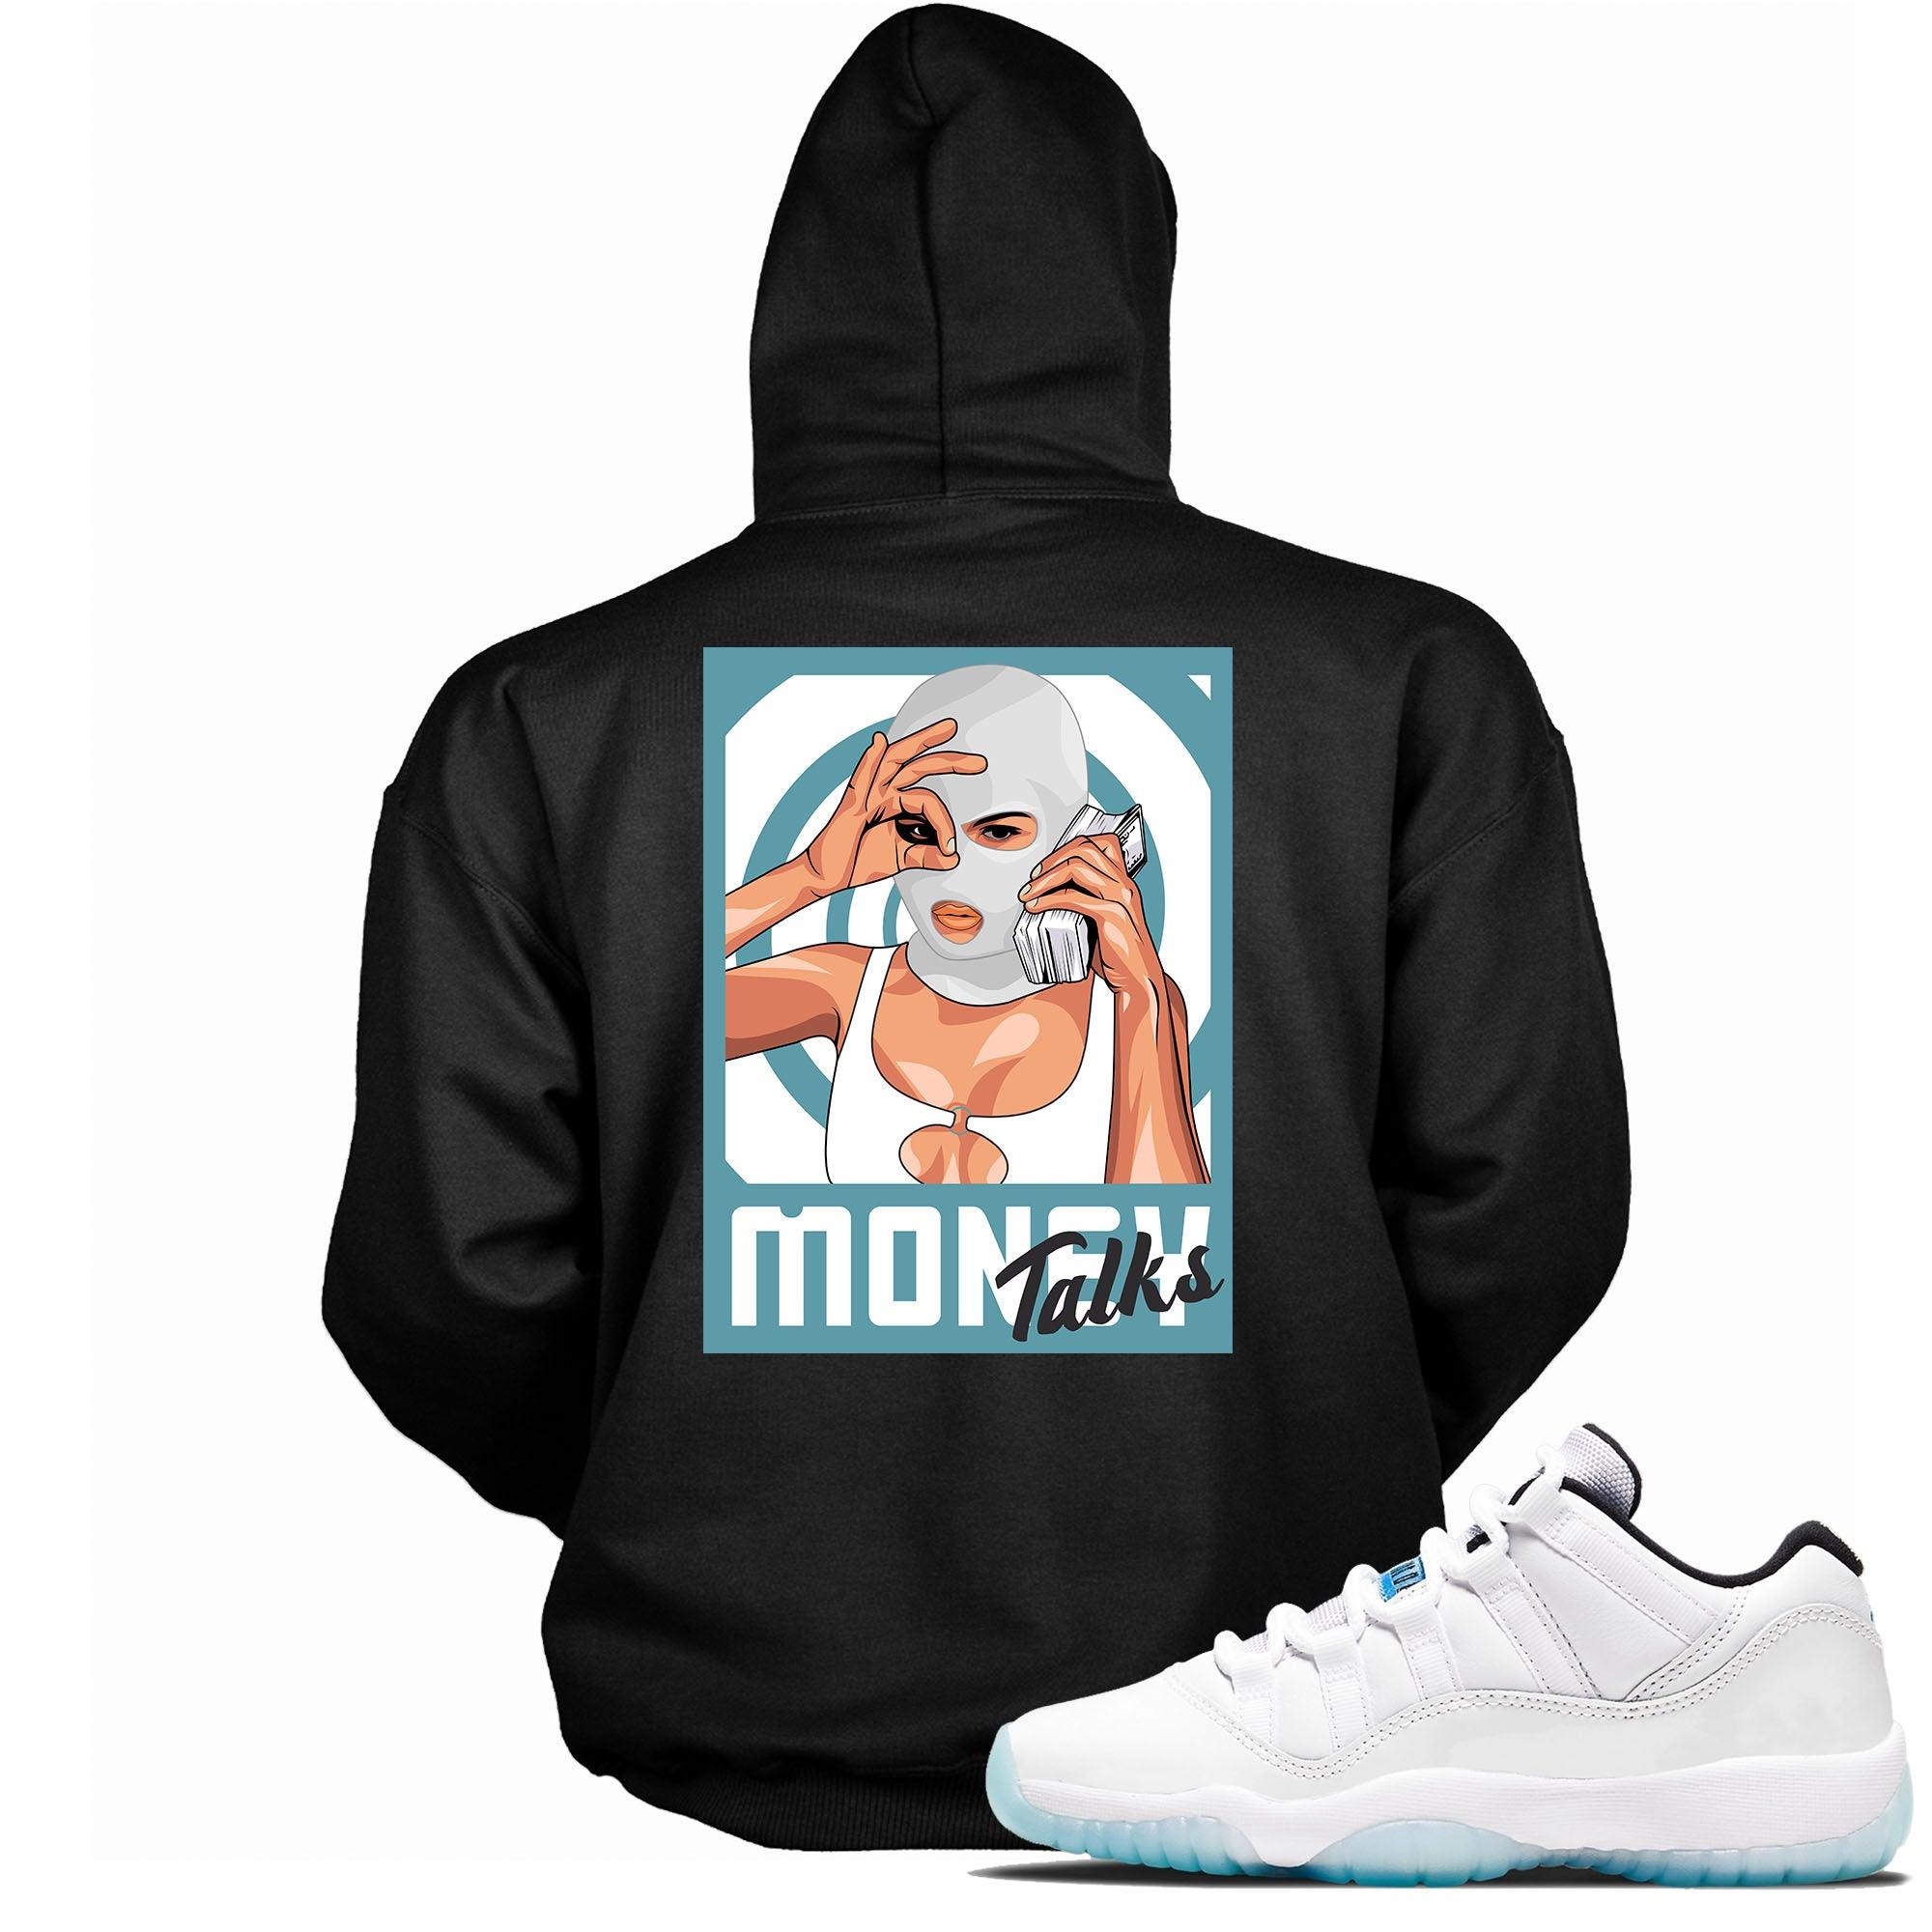 Money Talks Sneaker Sweatshirt AJ 11 Retro Low Legend Blue photo